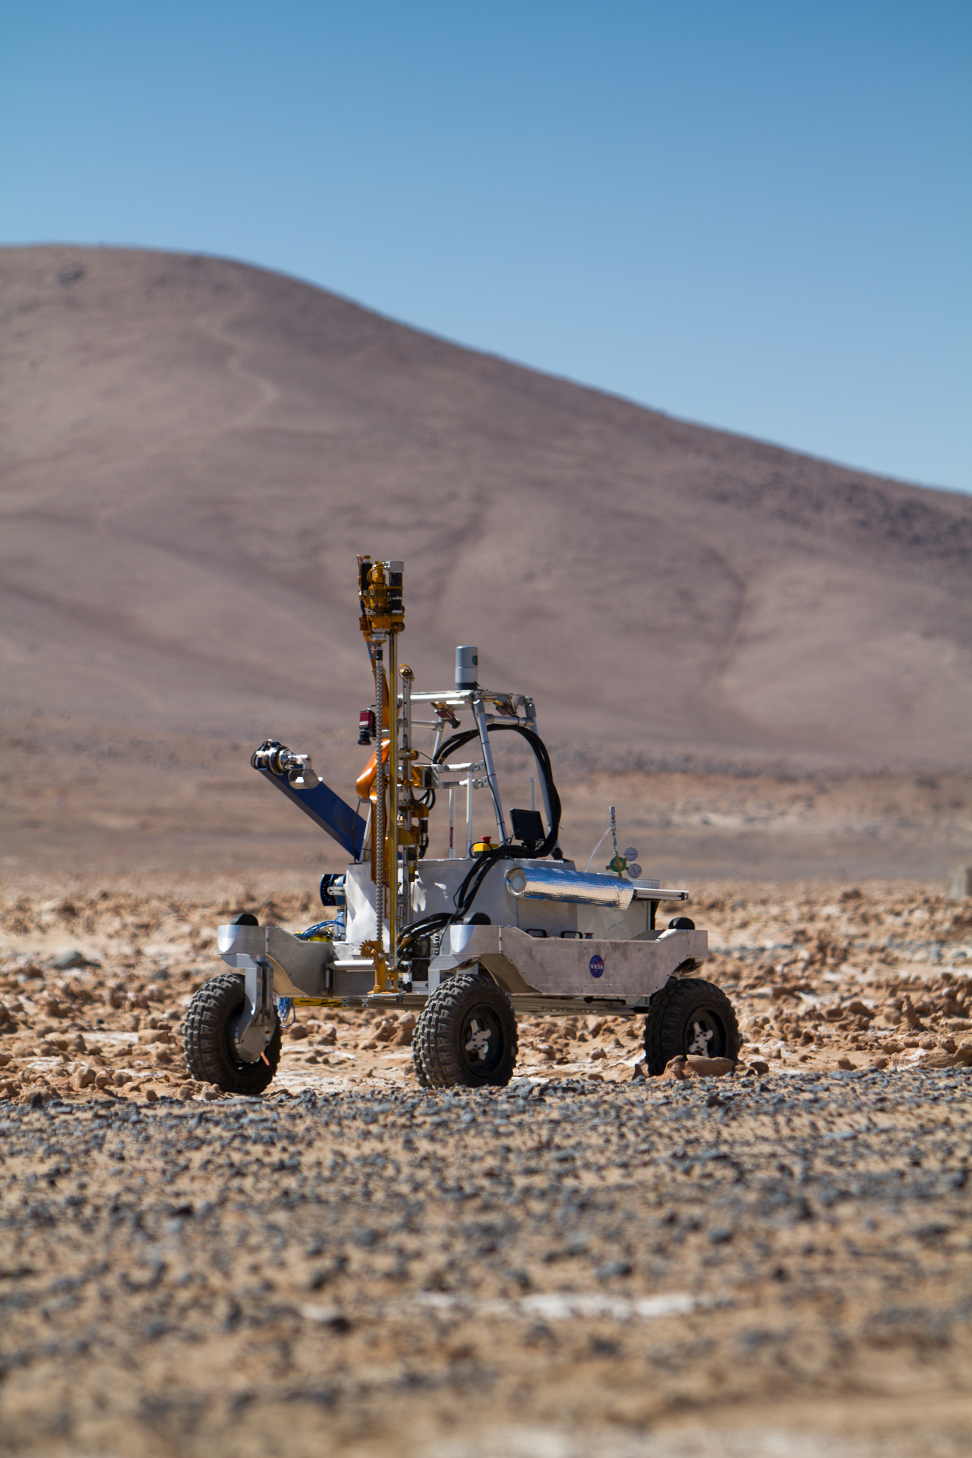 Arads Rover in Atacama